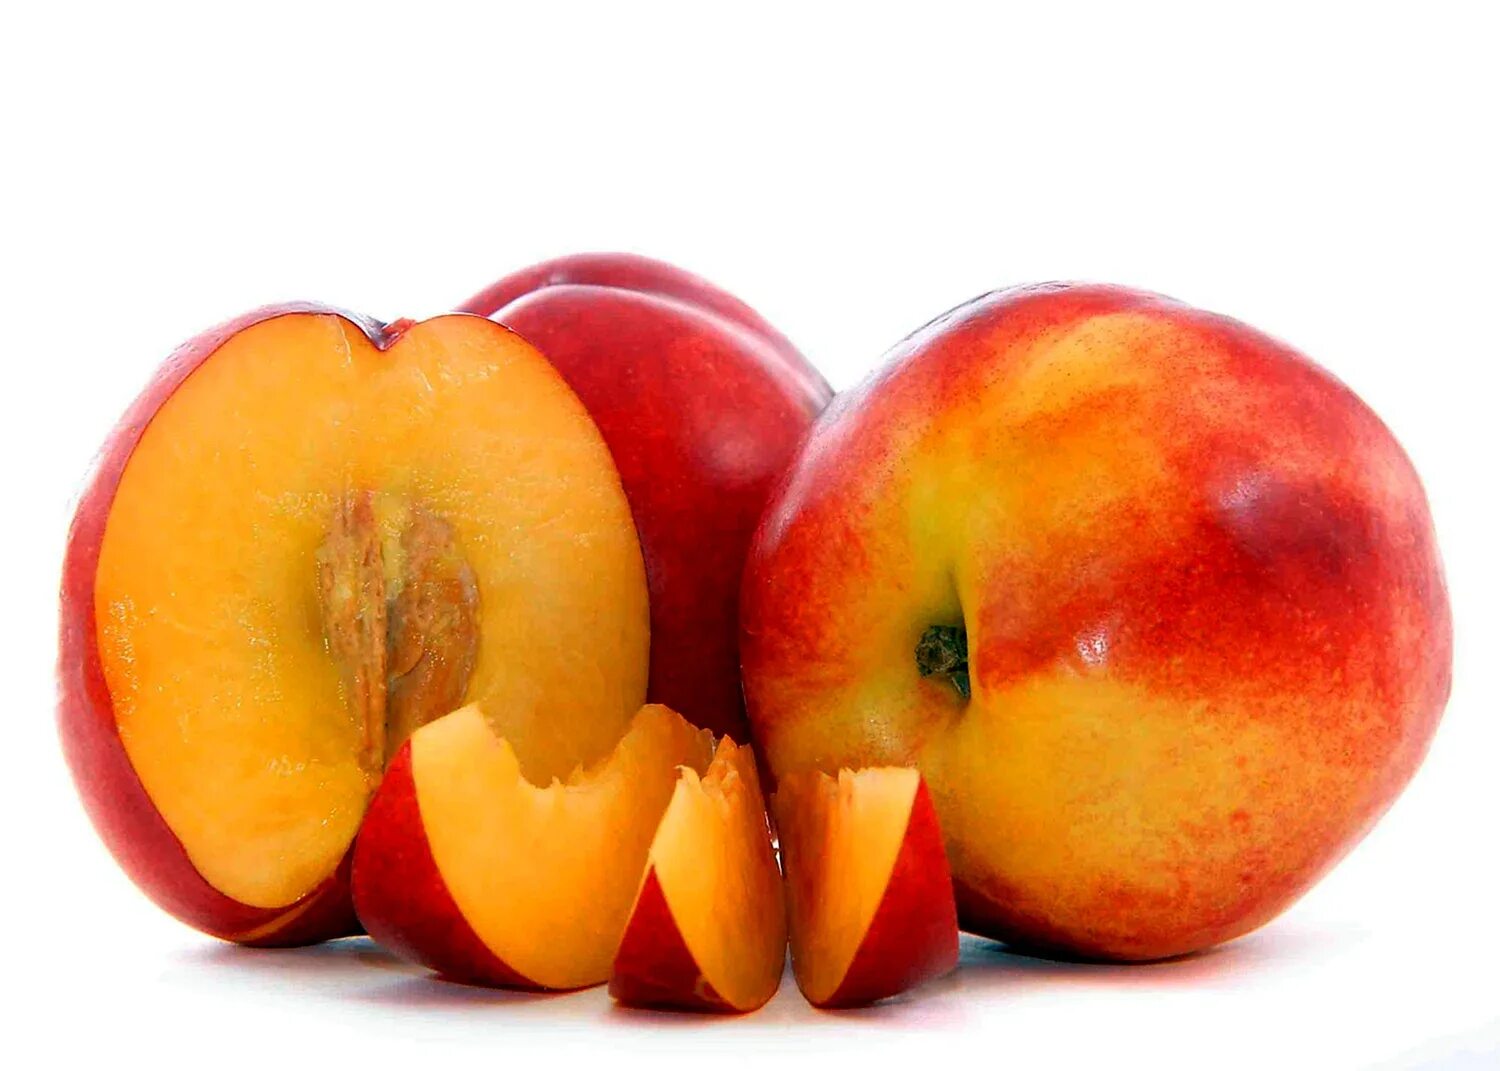 2 12 всех фруктов составляют персики. Персик, манго,абрикос,нектарин. Нектарин медовый беломясый.